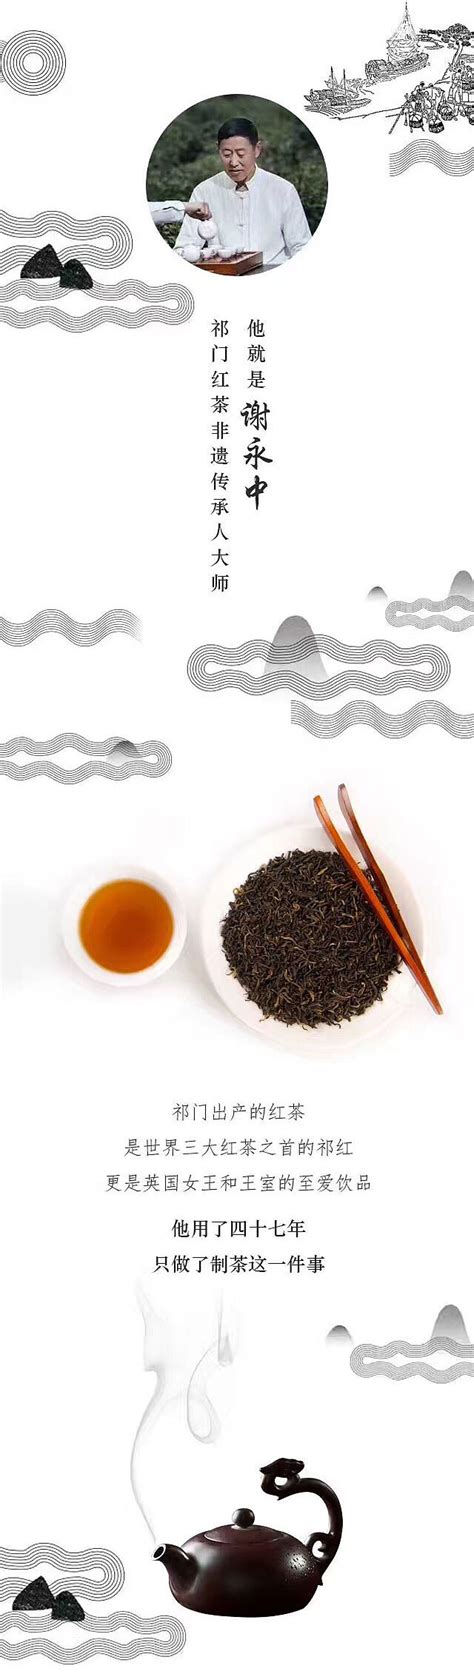 我们大茶网为什么要开体验店,大茶网是个什么模式